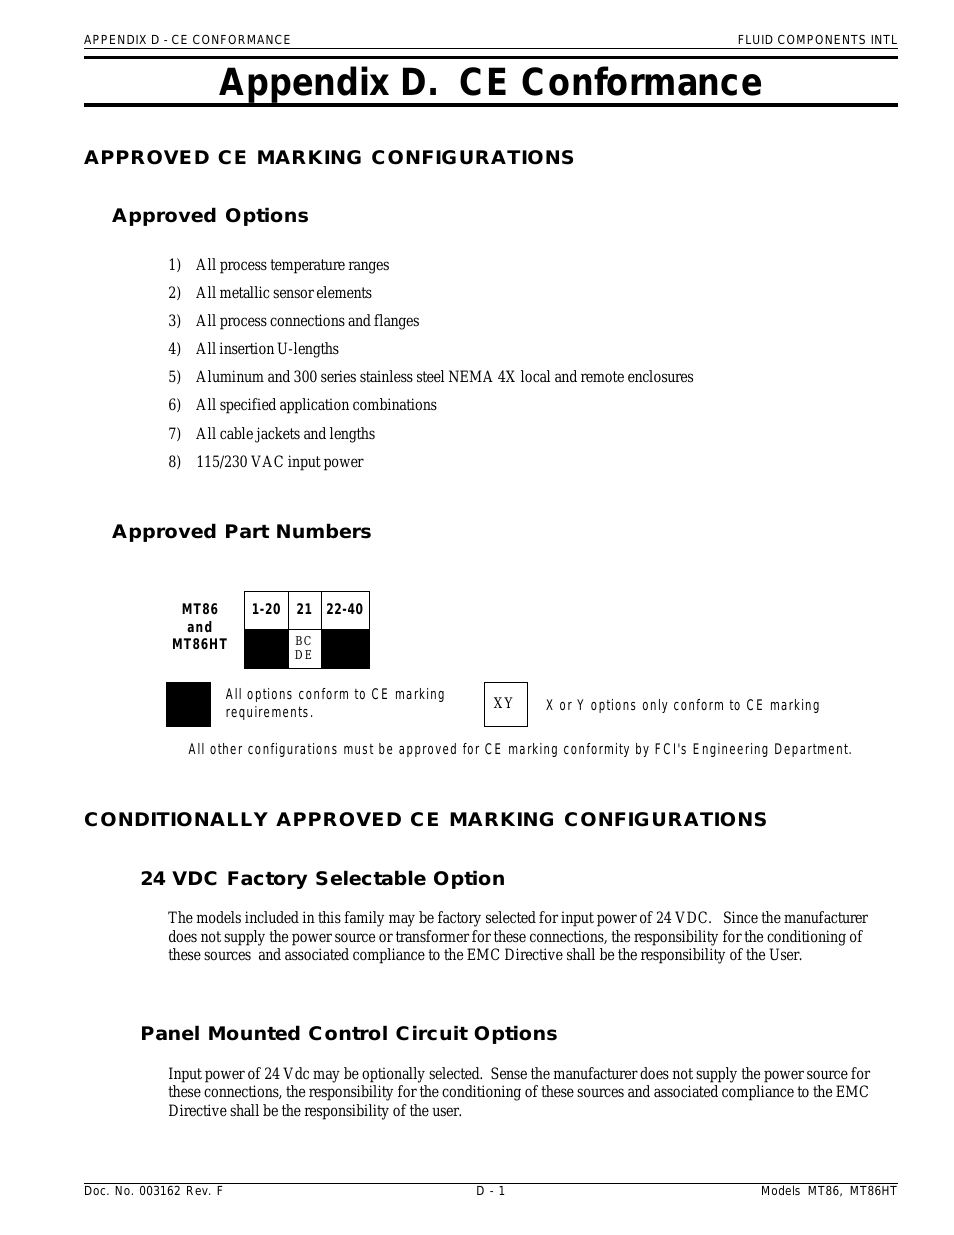 MT86_MT86HT Manual CE Conformance